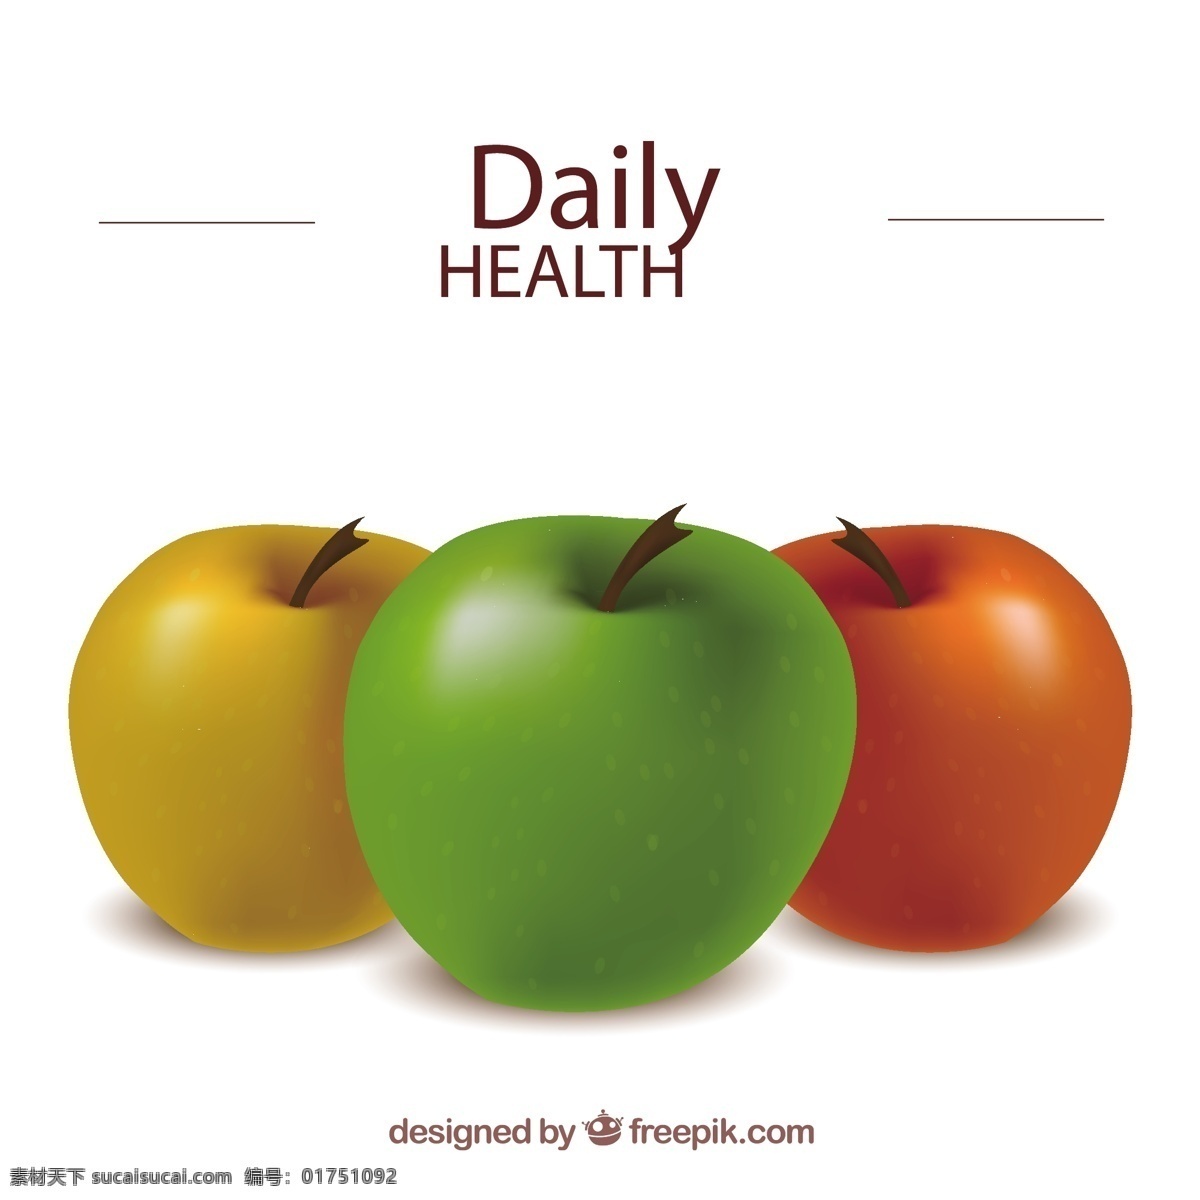 健康苹果 食品 保健 水果 苹果 有机 健康 有机食品 日报 图标 高清 源文件